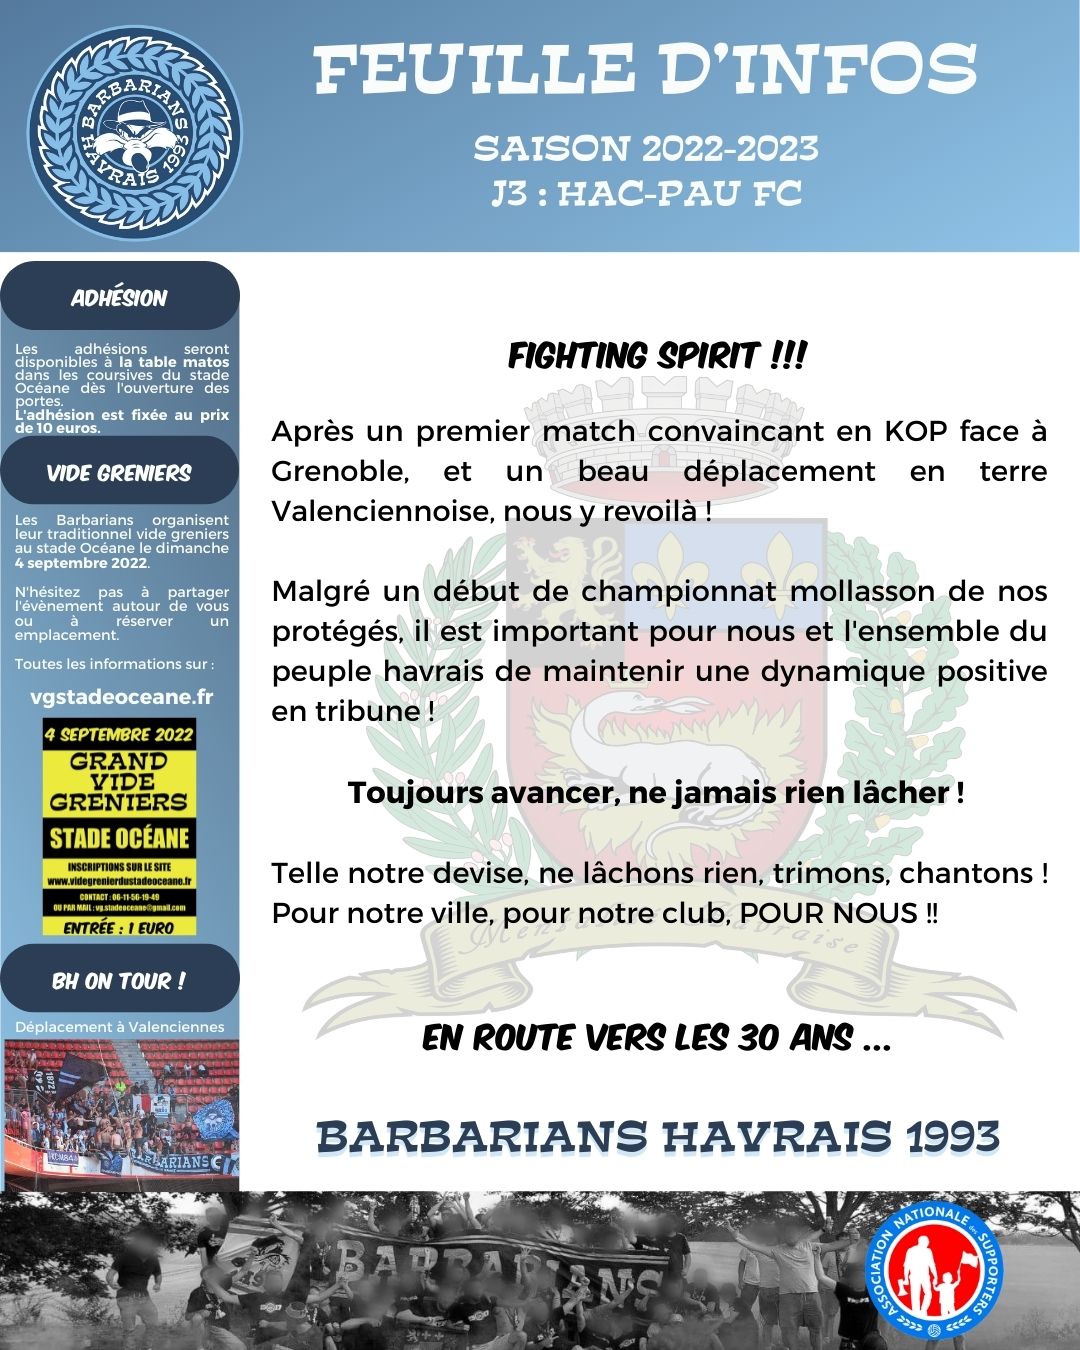 FI J3 : HAC - PAU FC